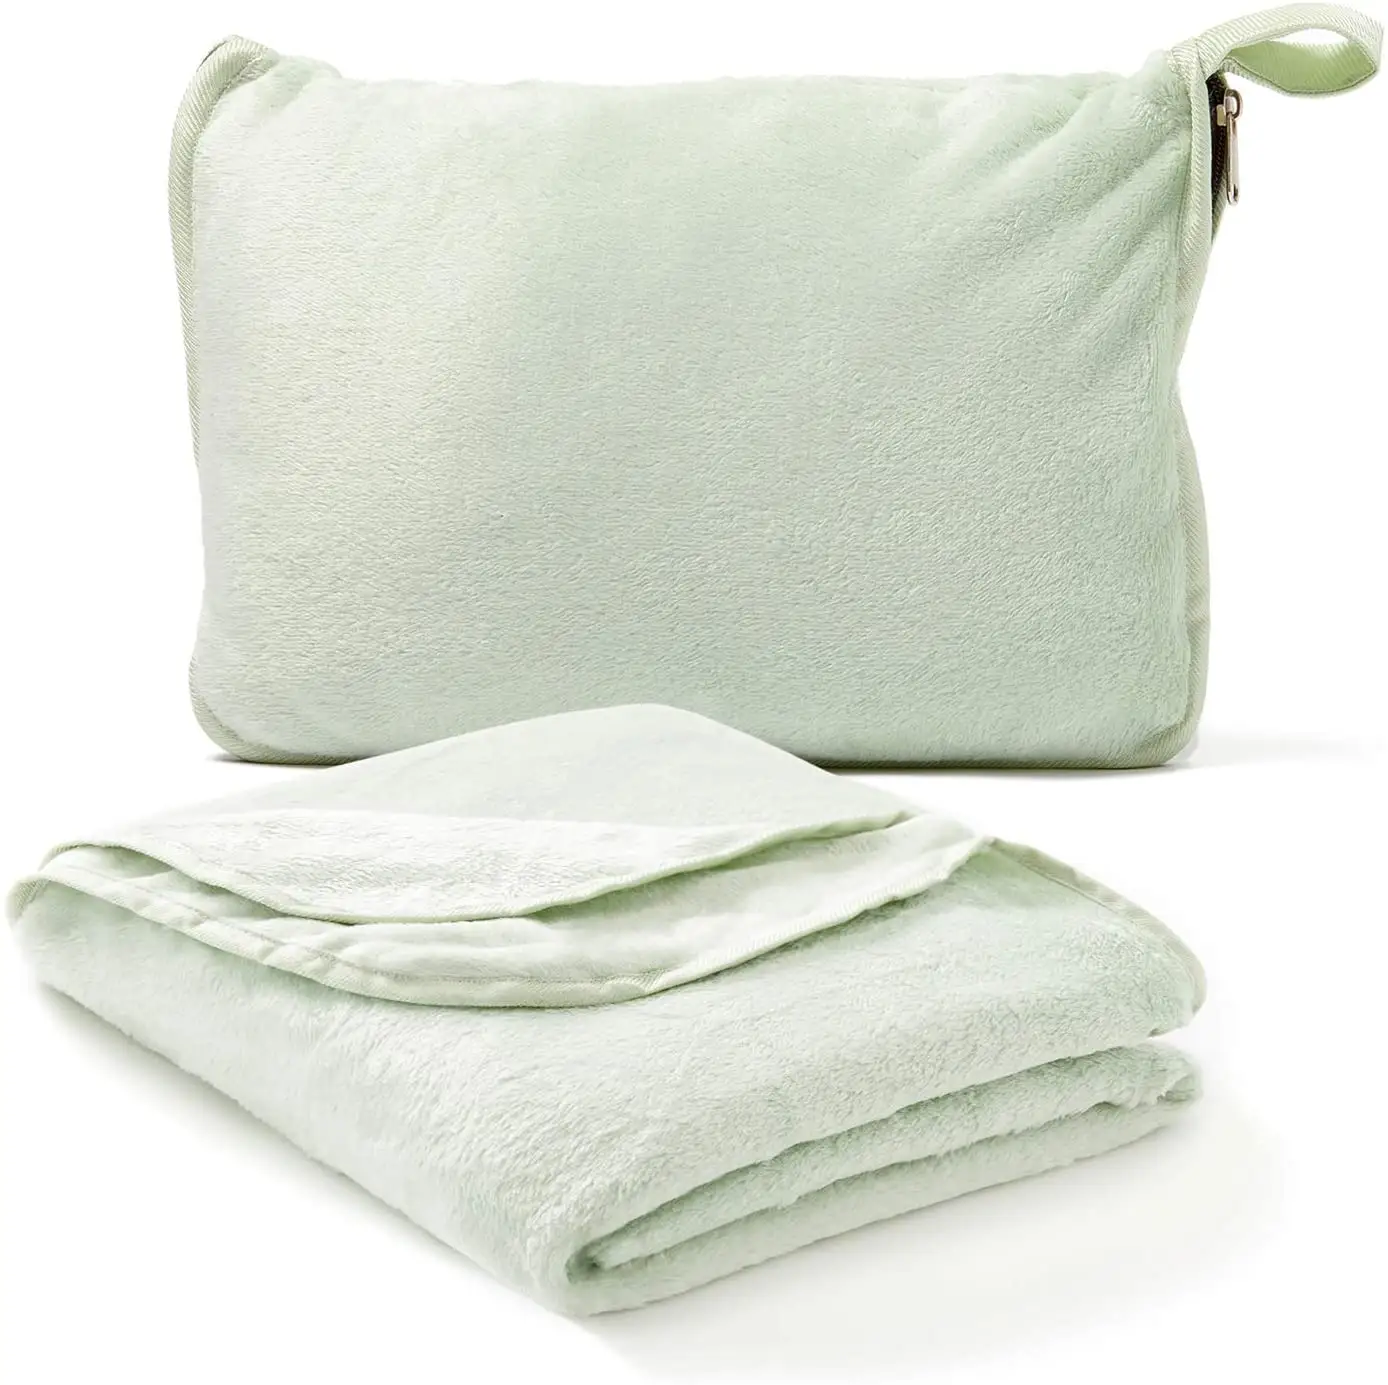 Grosir selimut dan bantal perjalanan bulu flanel kustom ringan selimut perjalanan 4 dalam 1 dapat dilipat portabel dalam kantong